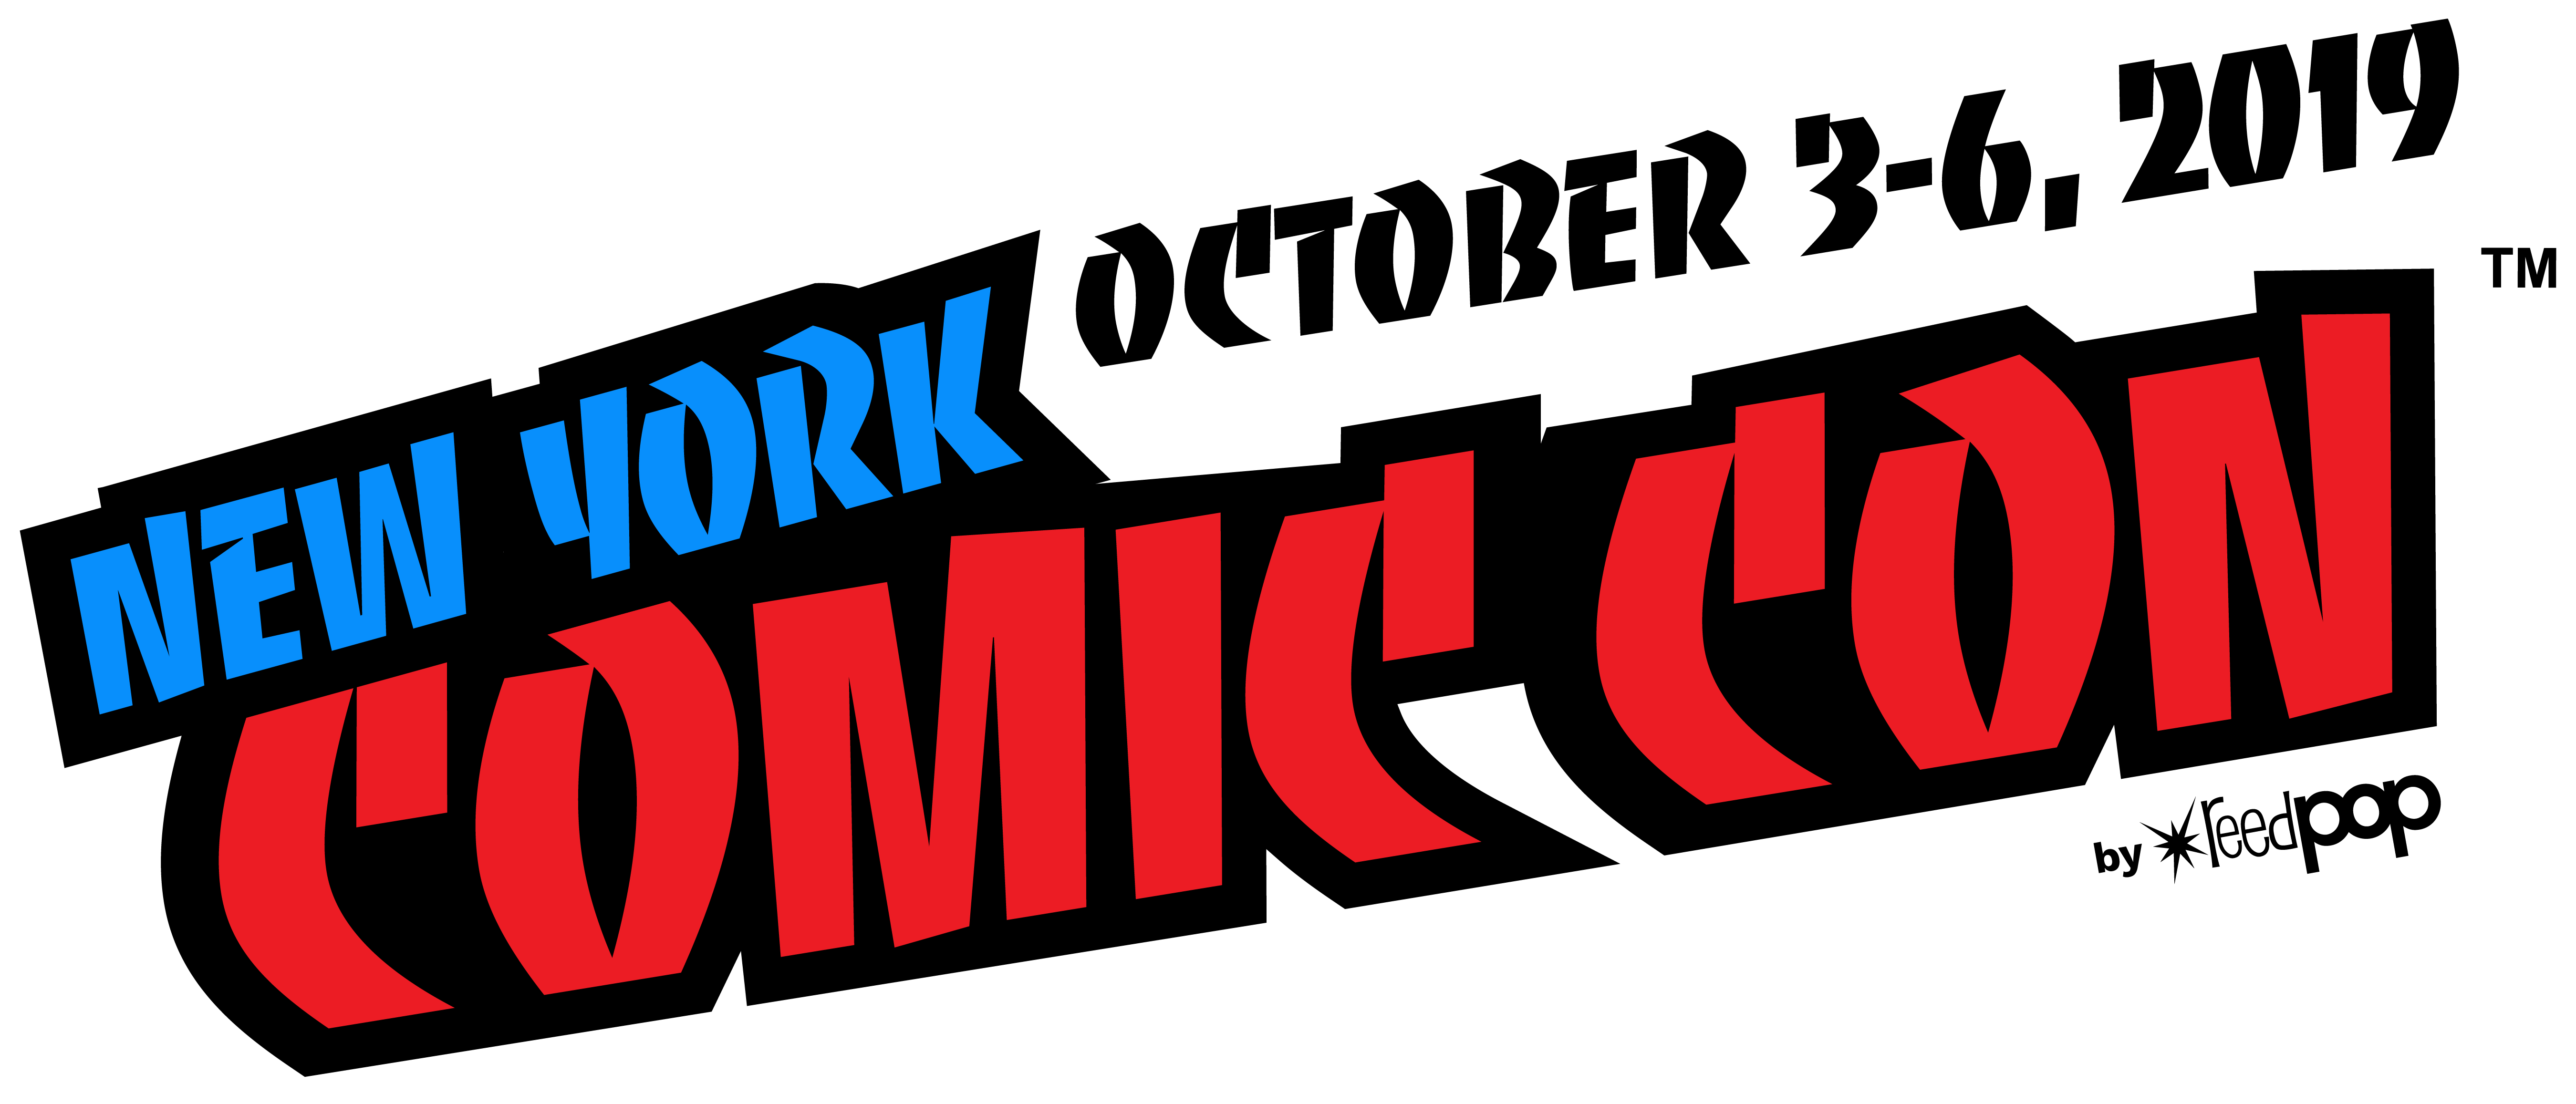 Marvel Reveals Amazing New York Comic Con Lineup